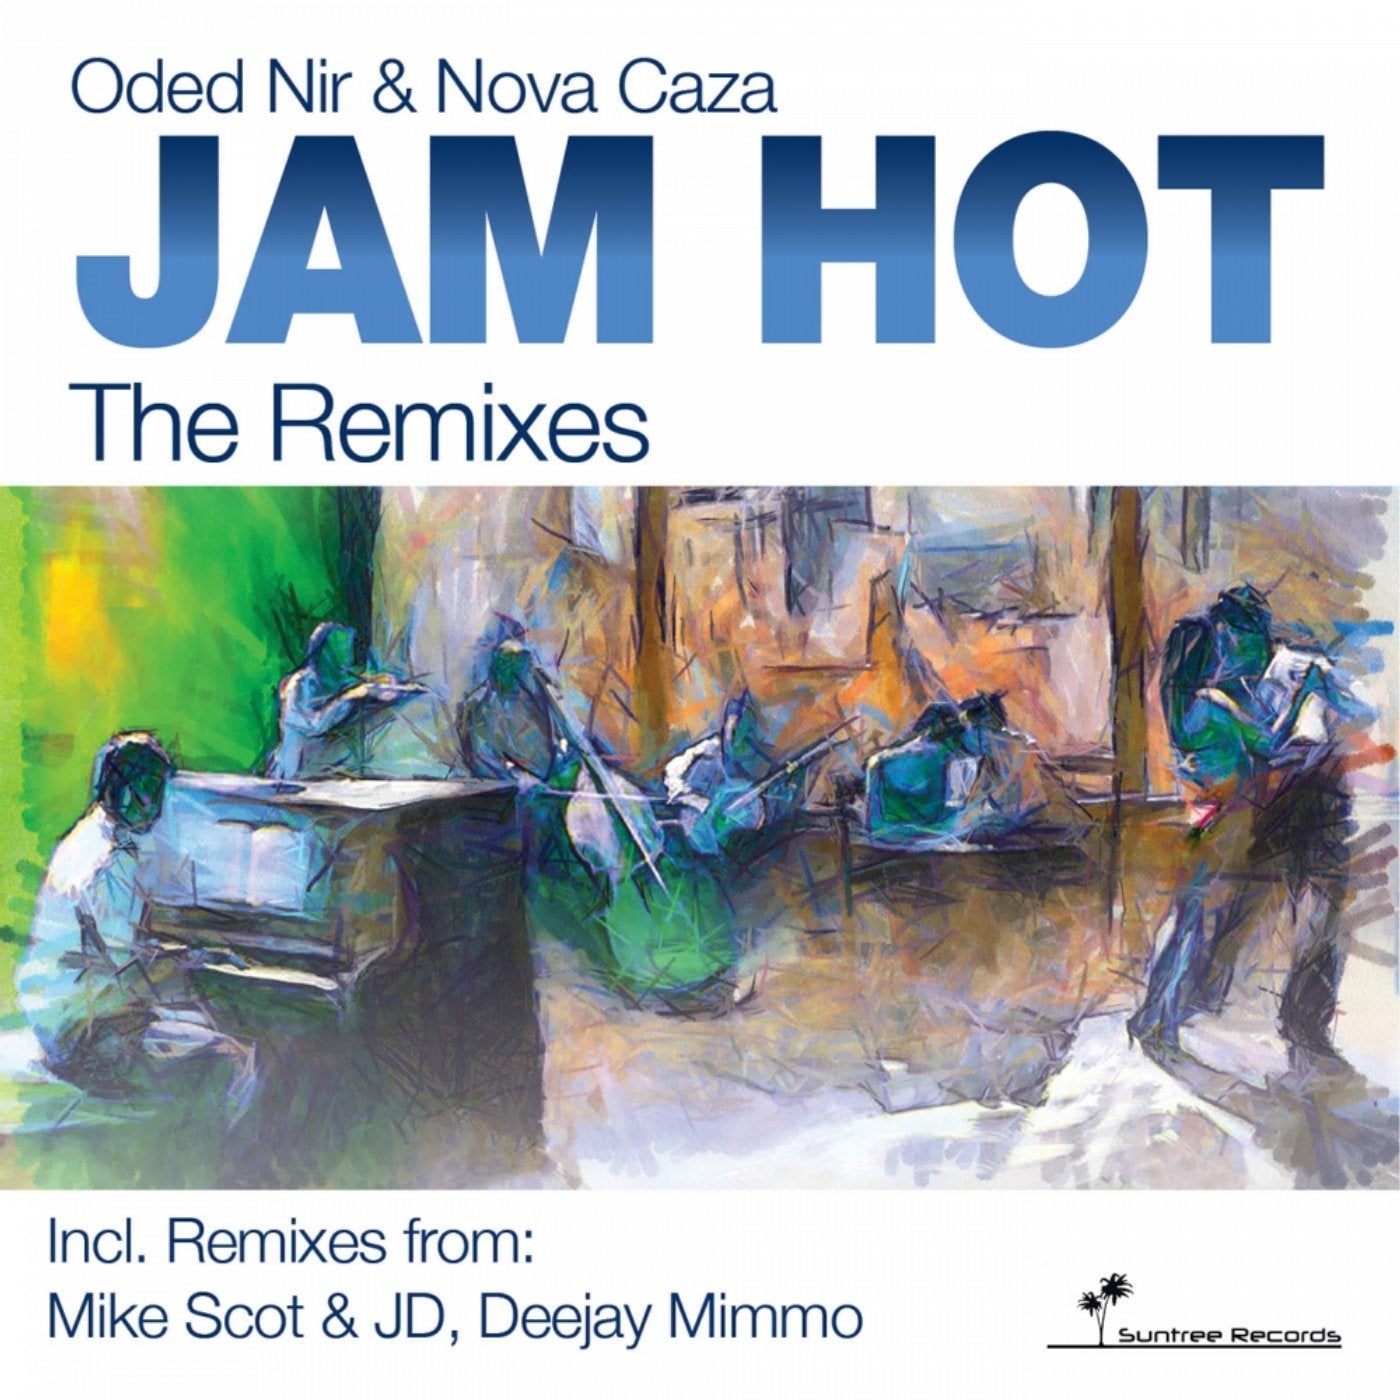 Jam Hot The Remixes